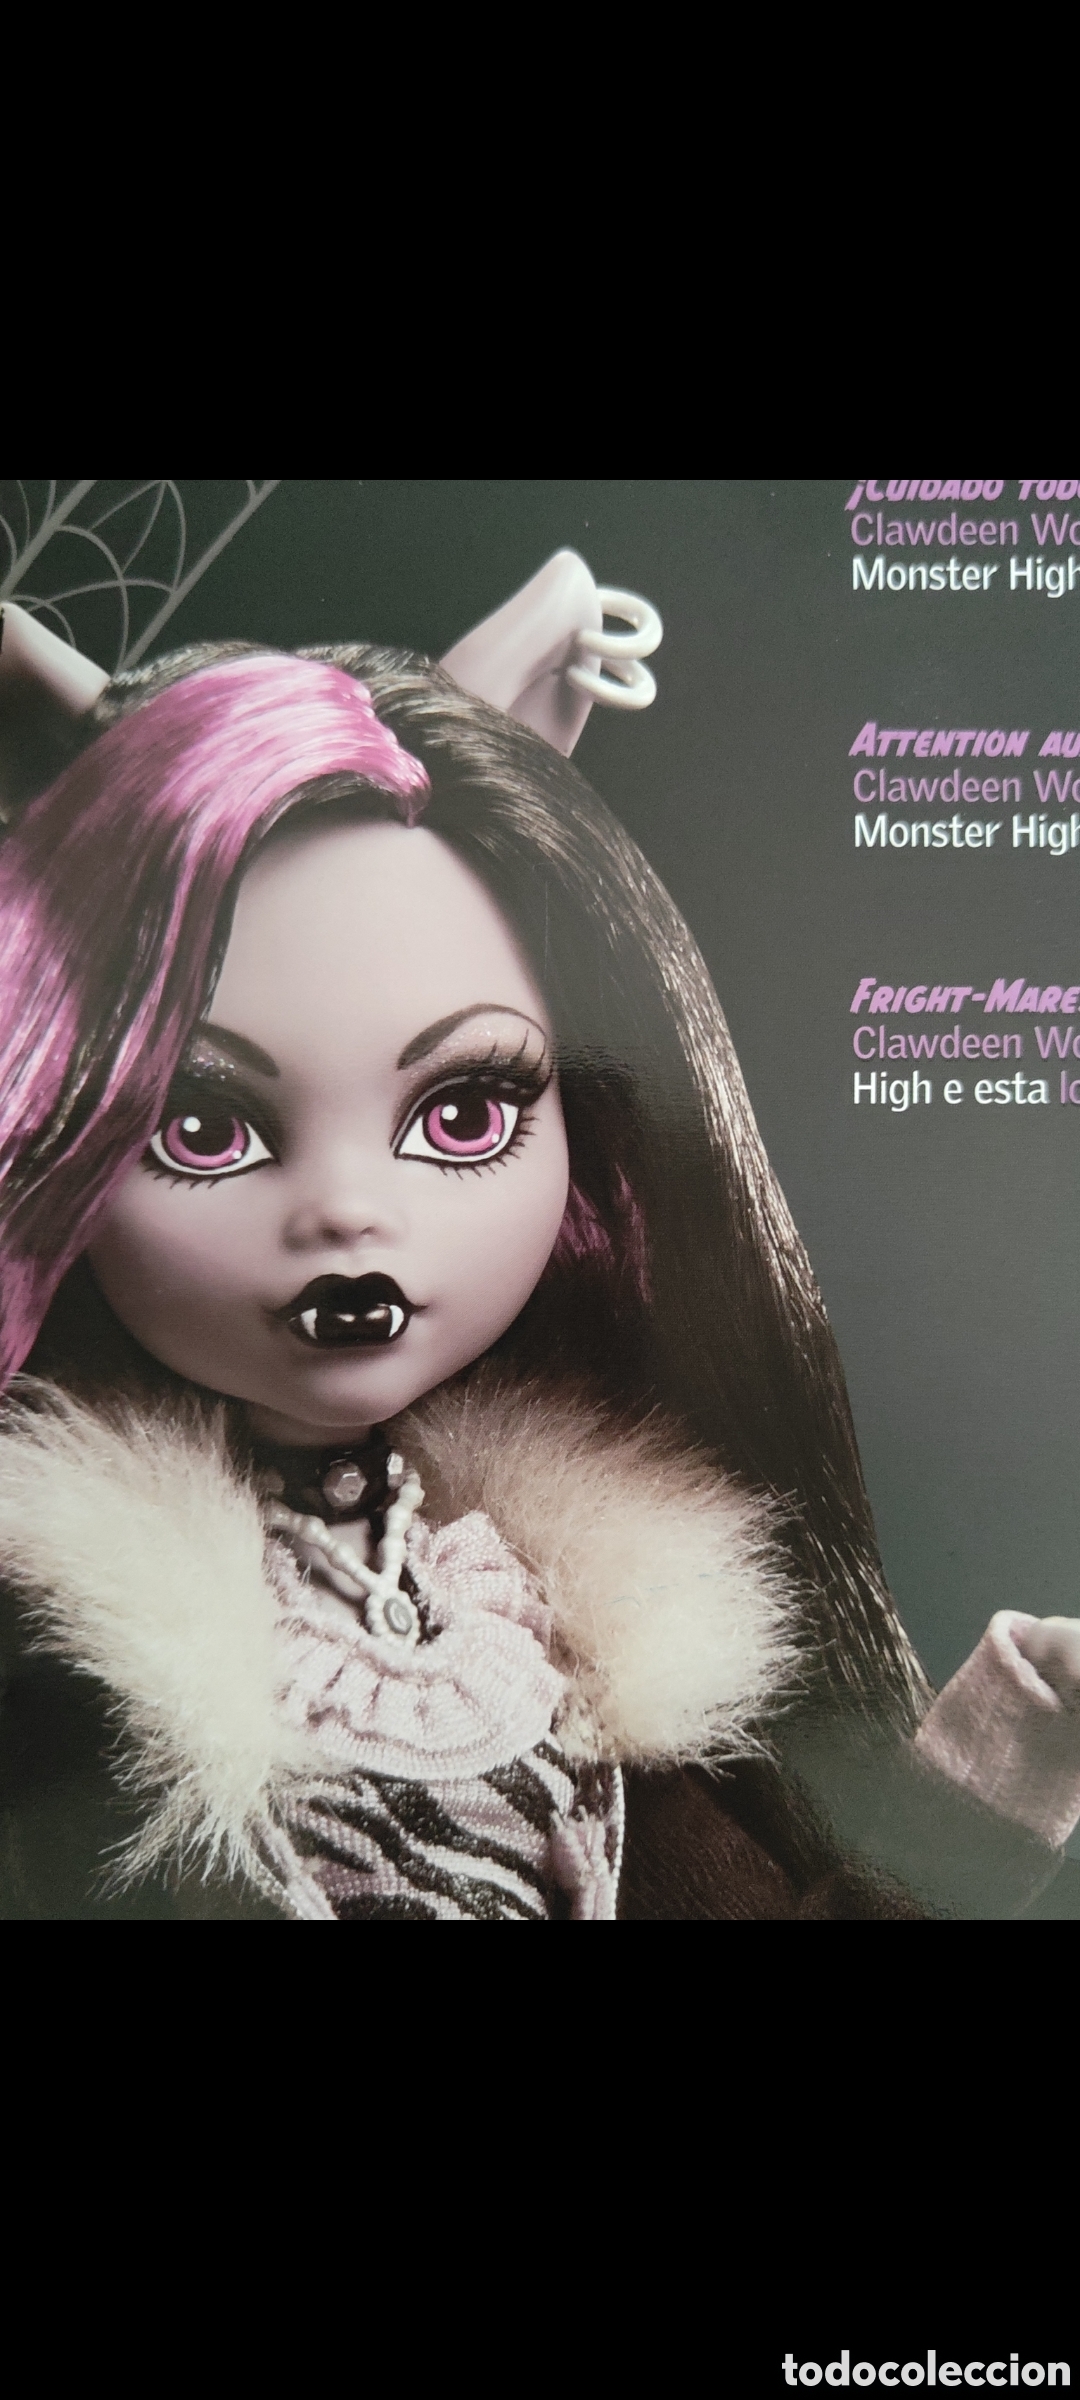 muñeca monster high clawd wolf - Acheter Autres poupées internationales  modernes sur todocoleccion